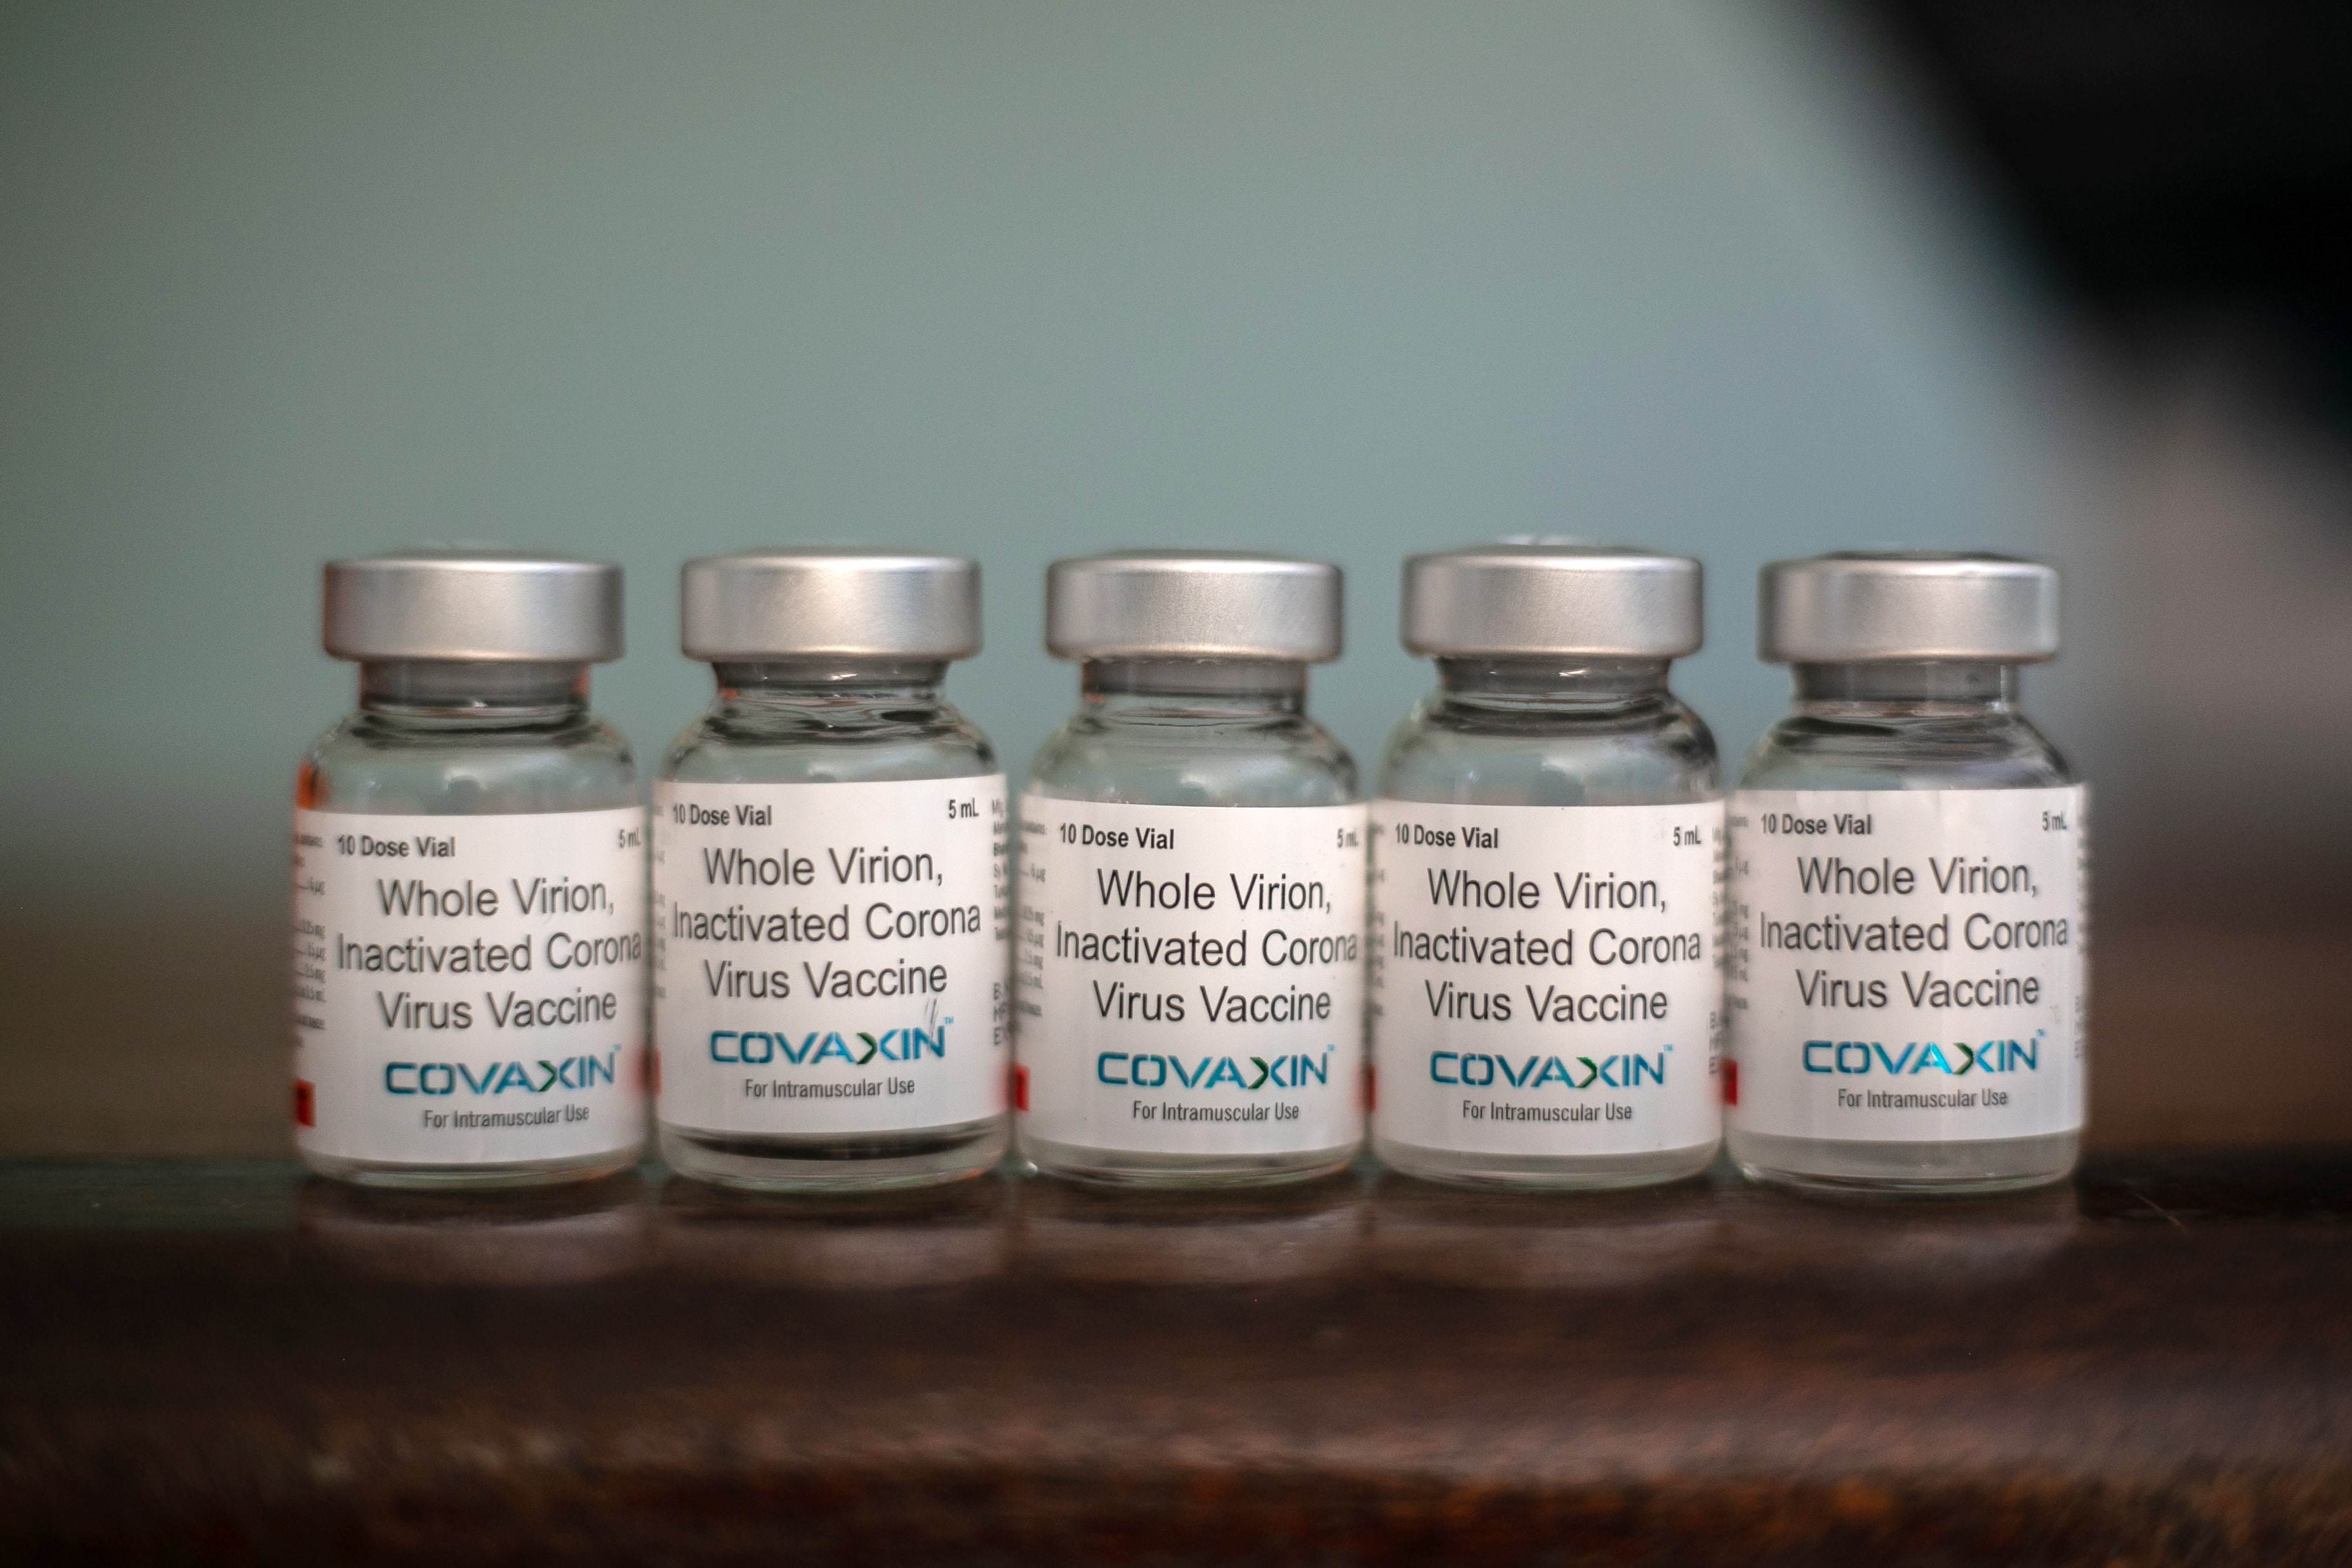 Frascos da Covaxin, vacina contra Covid-19